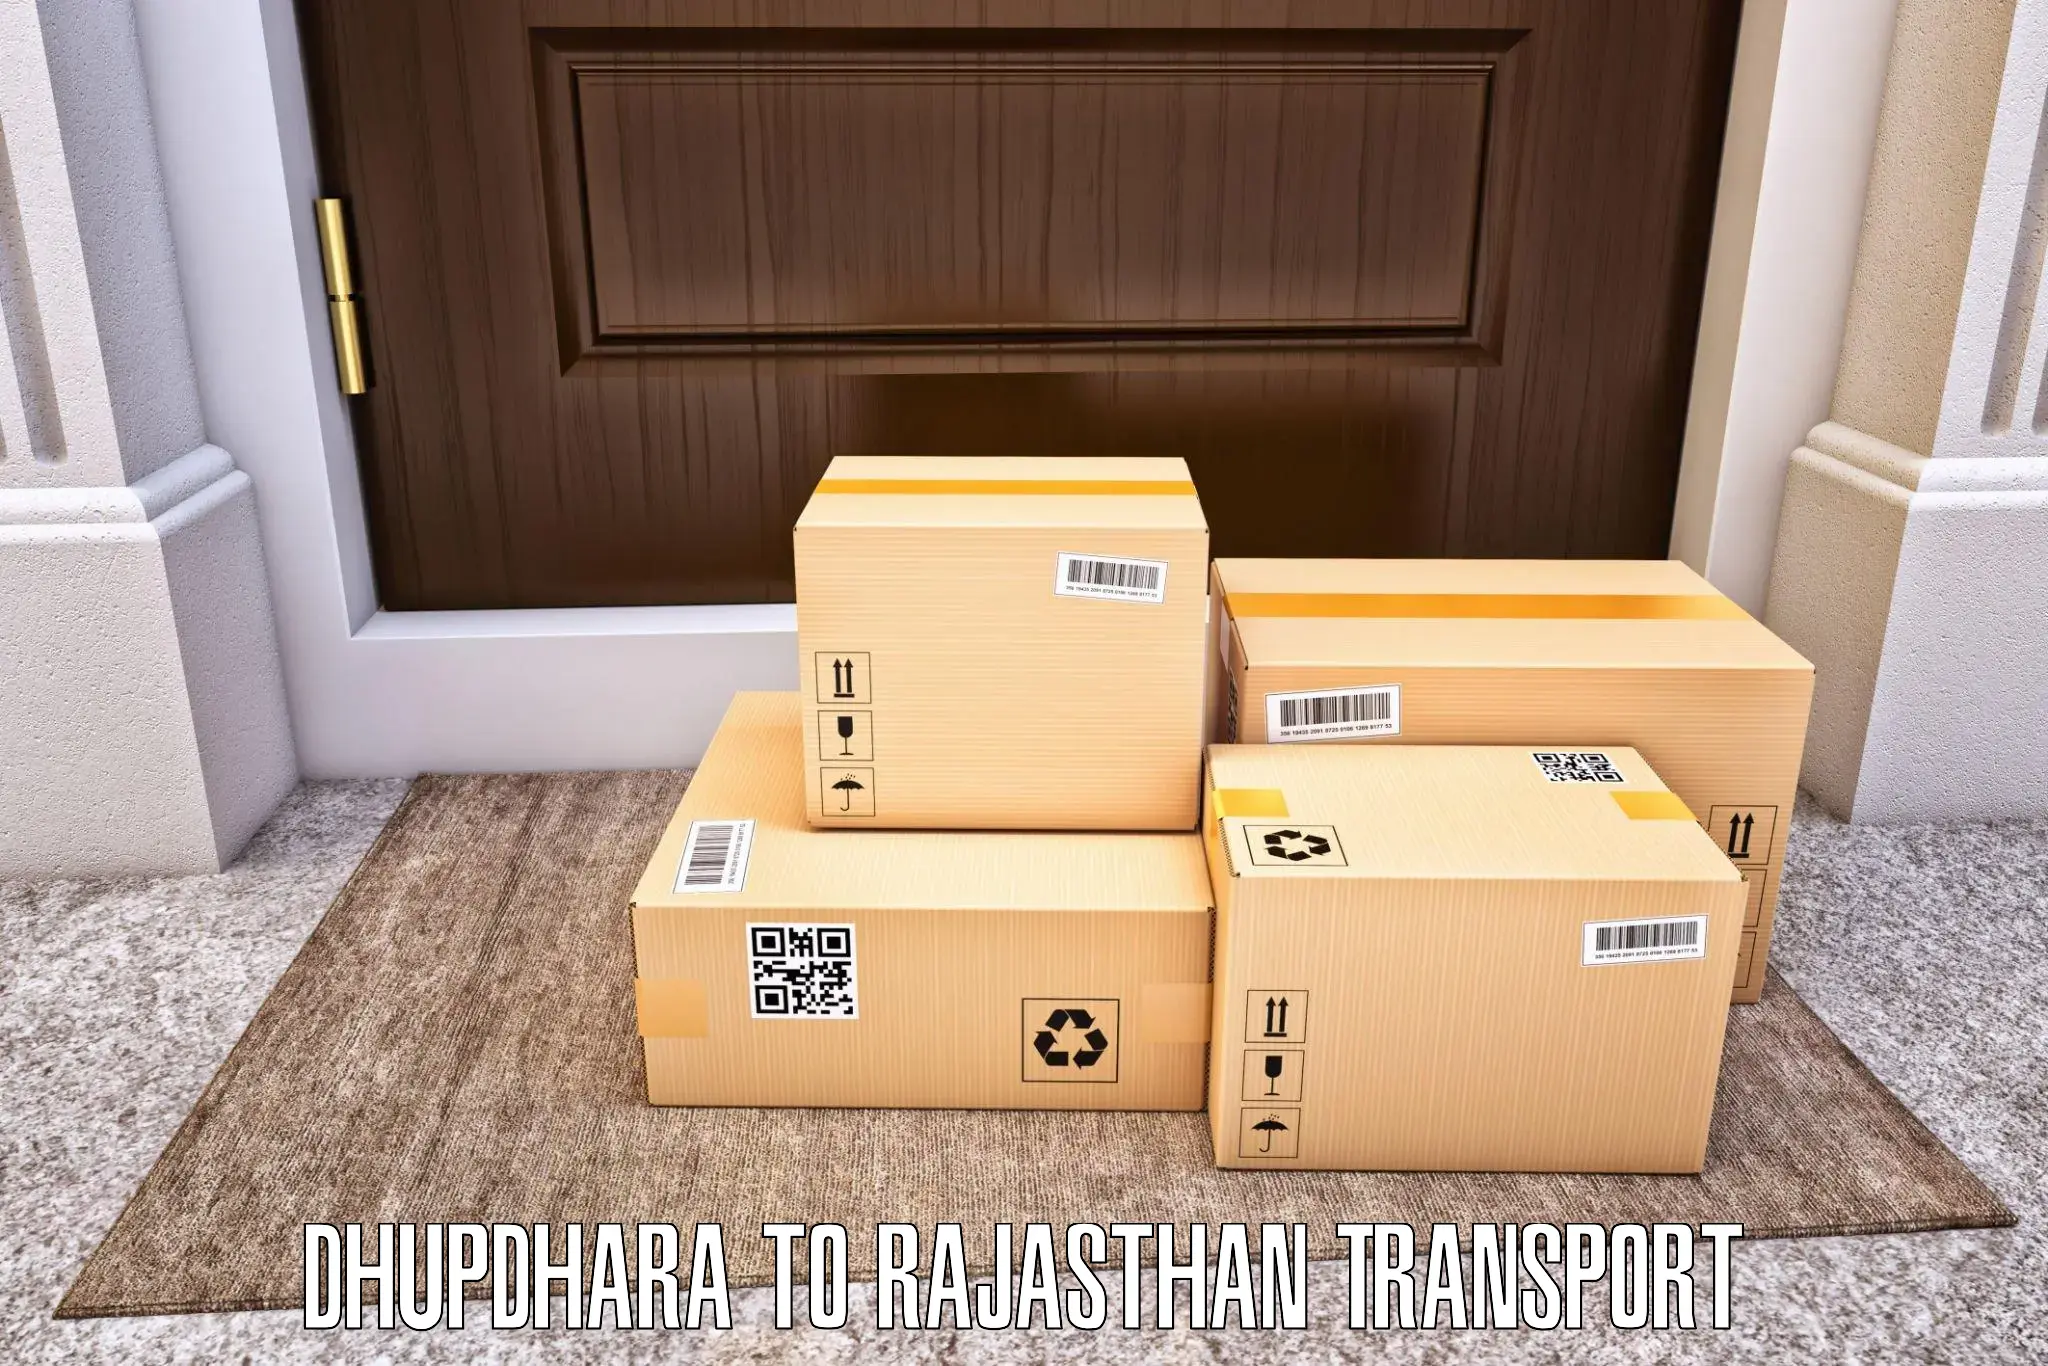 Cargo transportation services Dhupdhara to Kaman